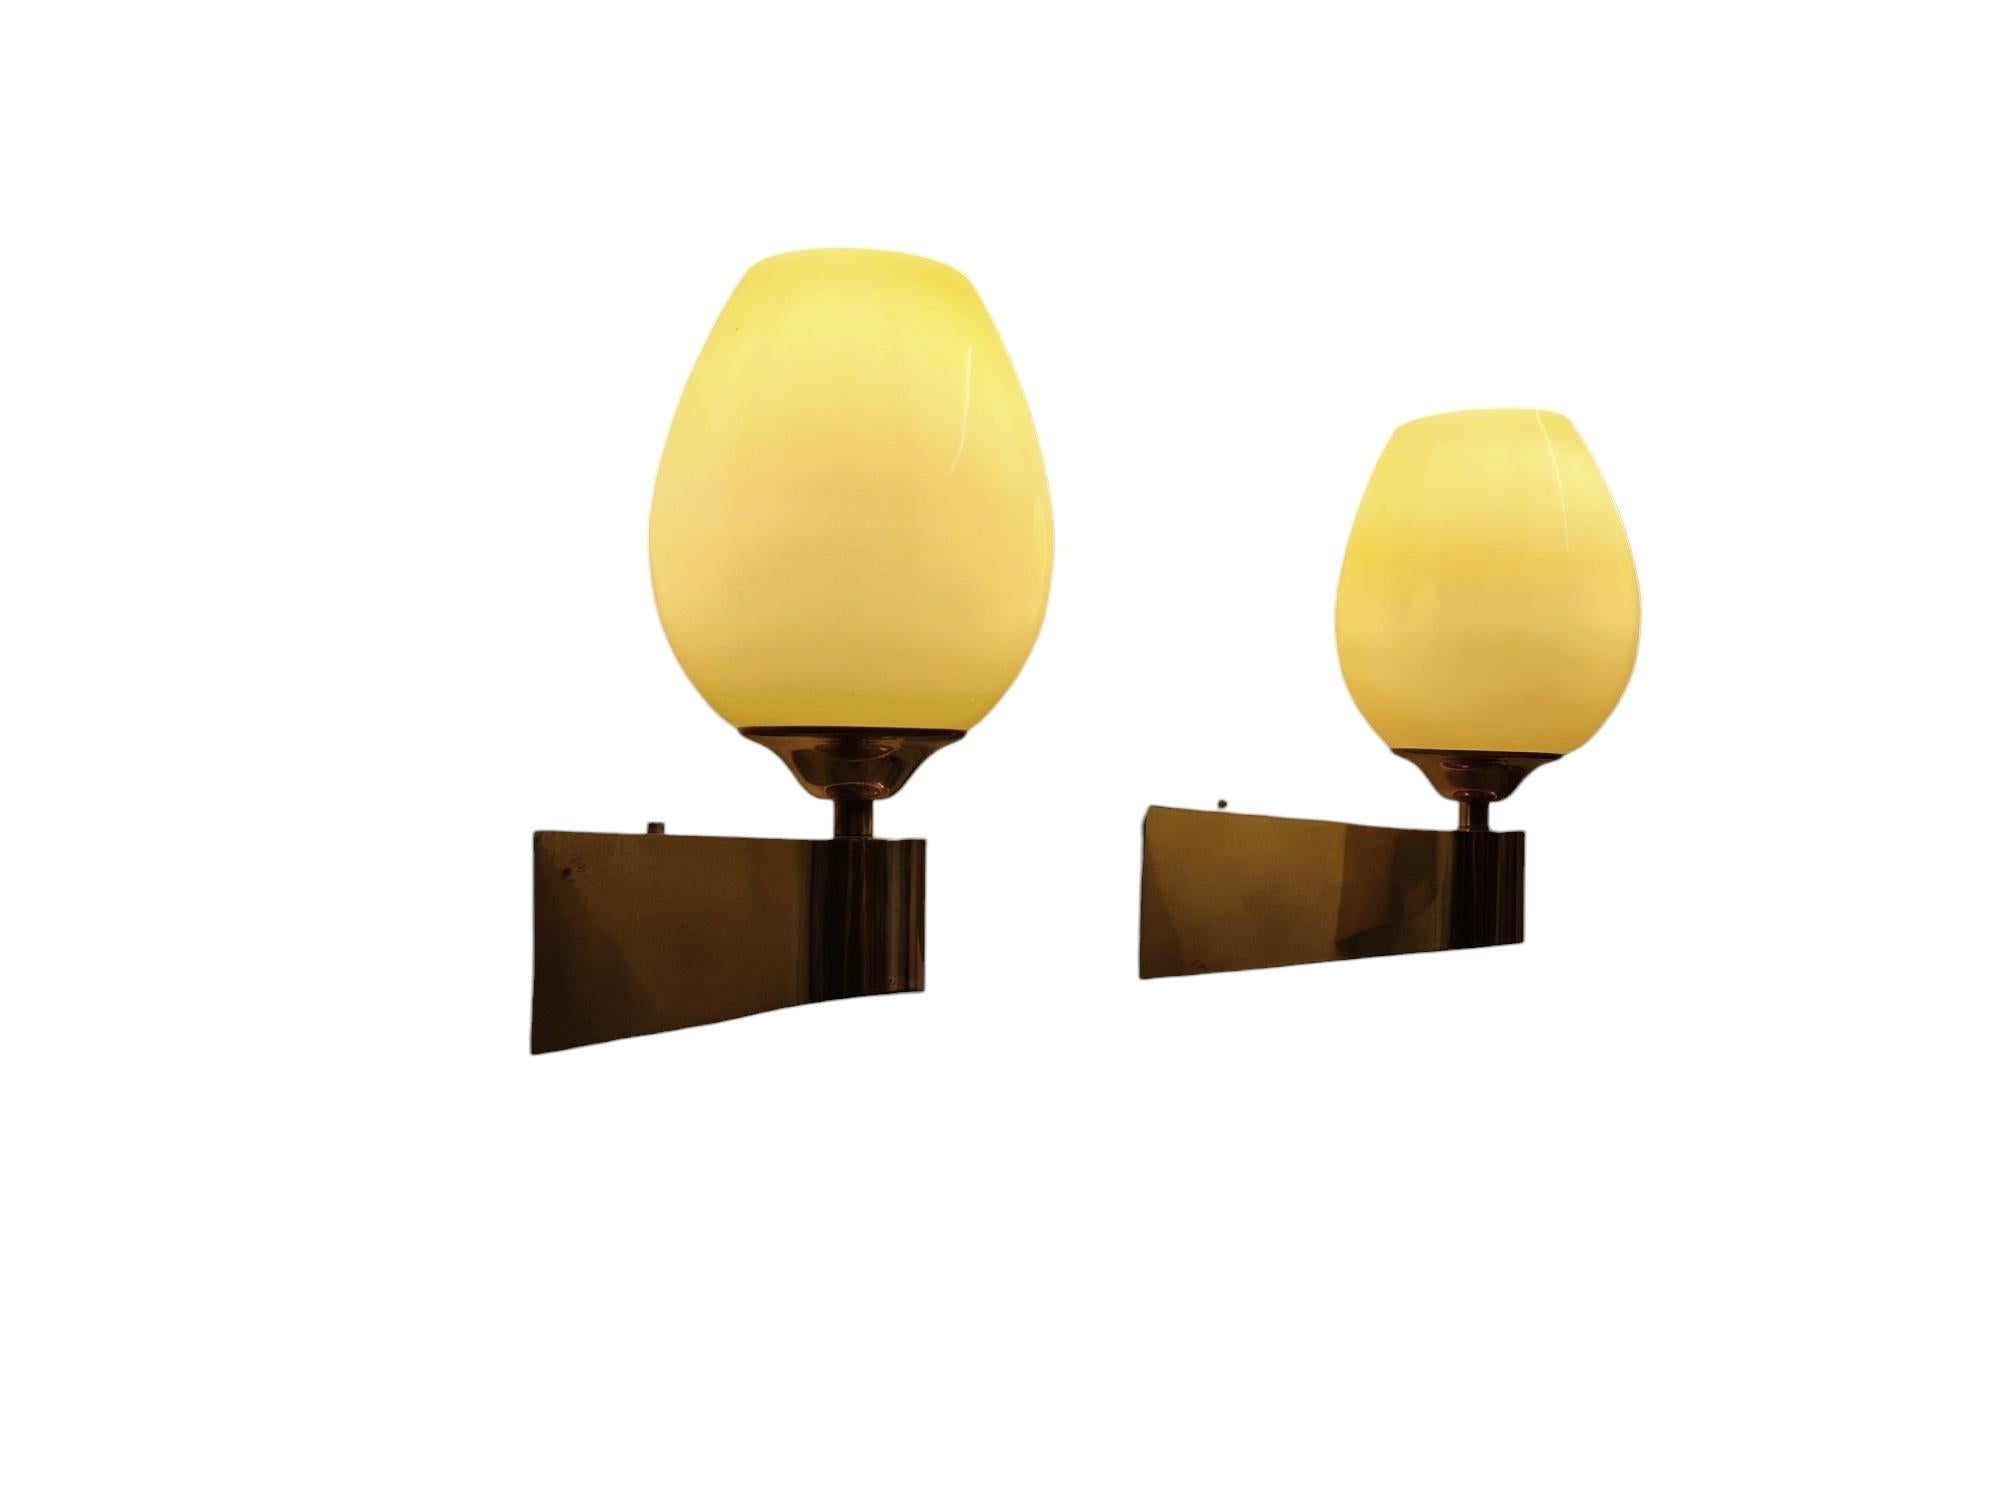 Ein schönes Paar Wandlampen aus Messing, hergestellt von Itsu in Finnland in den 1950er Jahren. Modell EY 49. 
Die Lampen sind minimalistisch mit einem kubischen Design, das durch Kurven gemildert wird, und mit einem mundgeblasenen Glasschirm